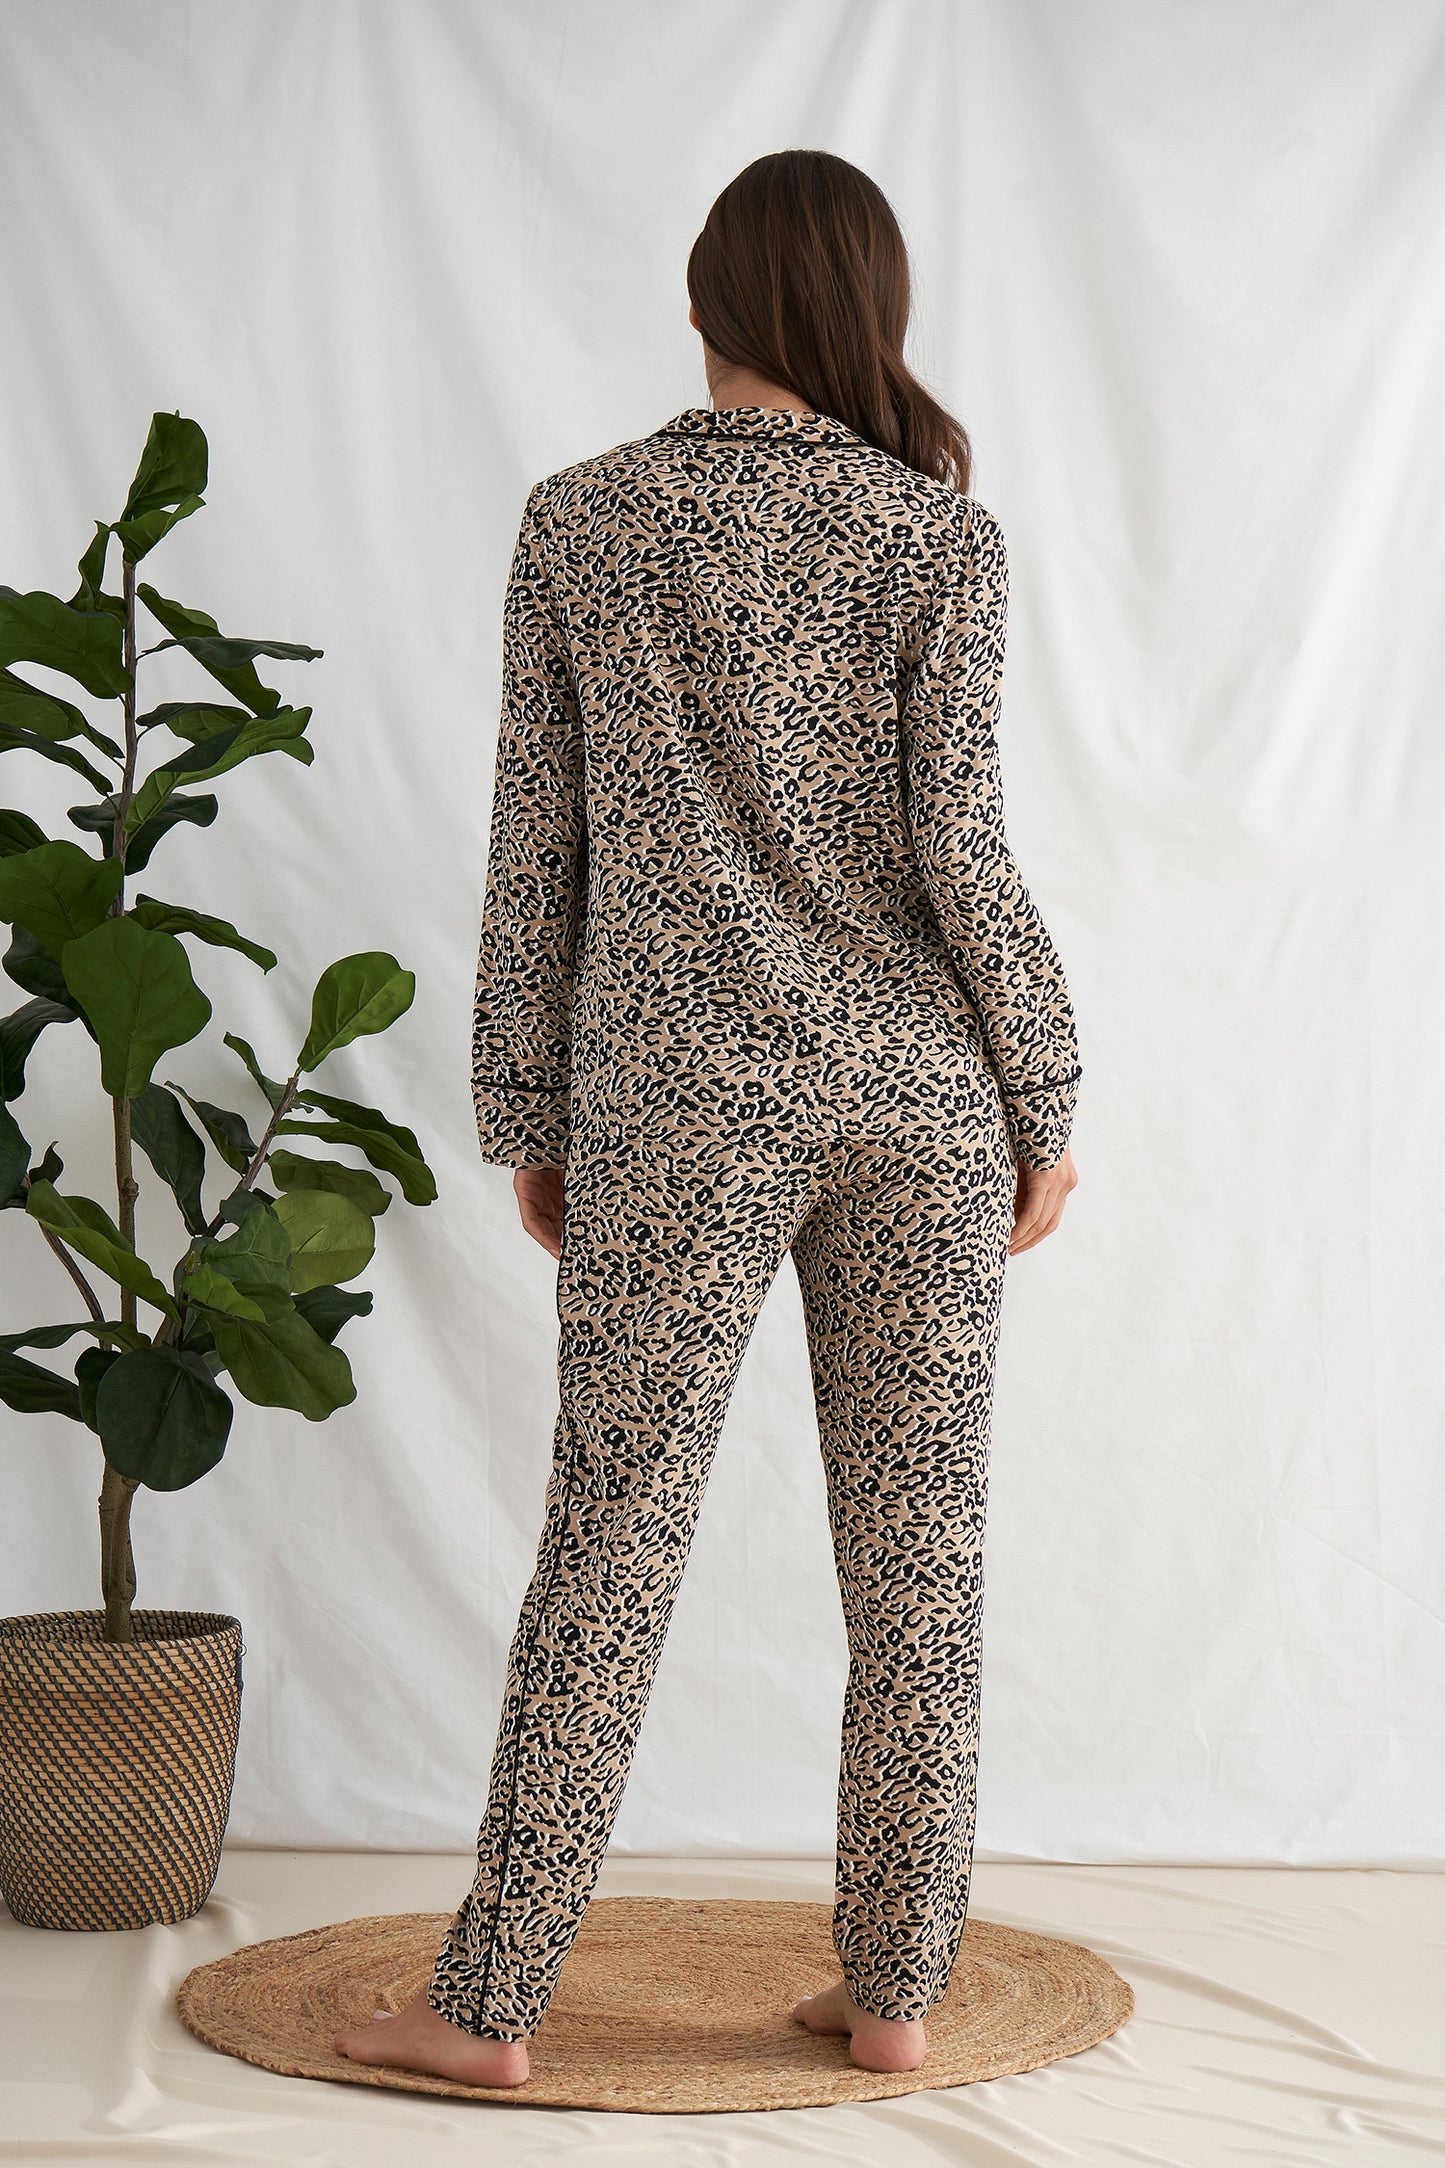 
                  
                    Women's Studio Cheetah PJ Pyjama Suit in Cheetah Print from Pretty You London
                  
                